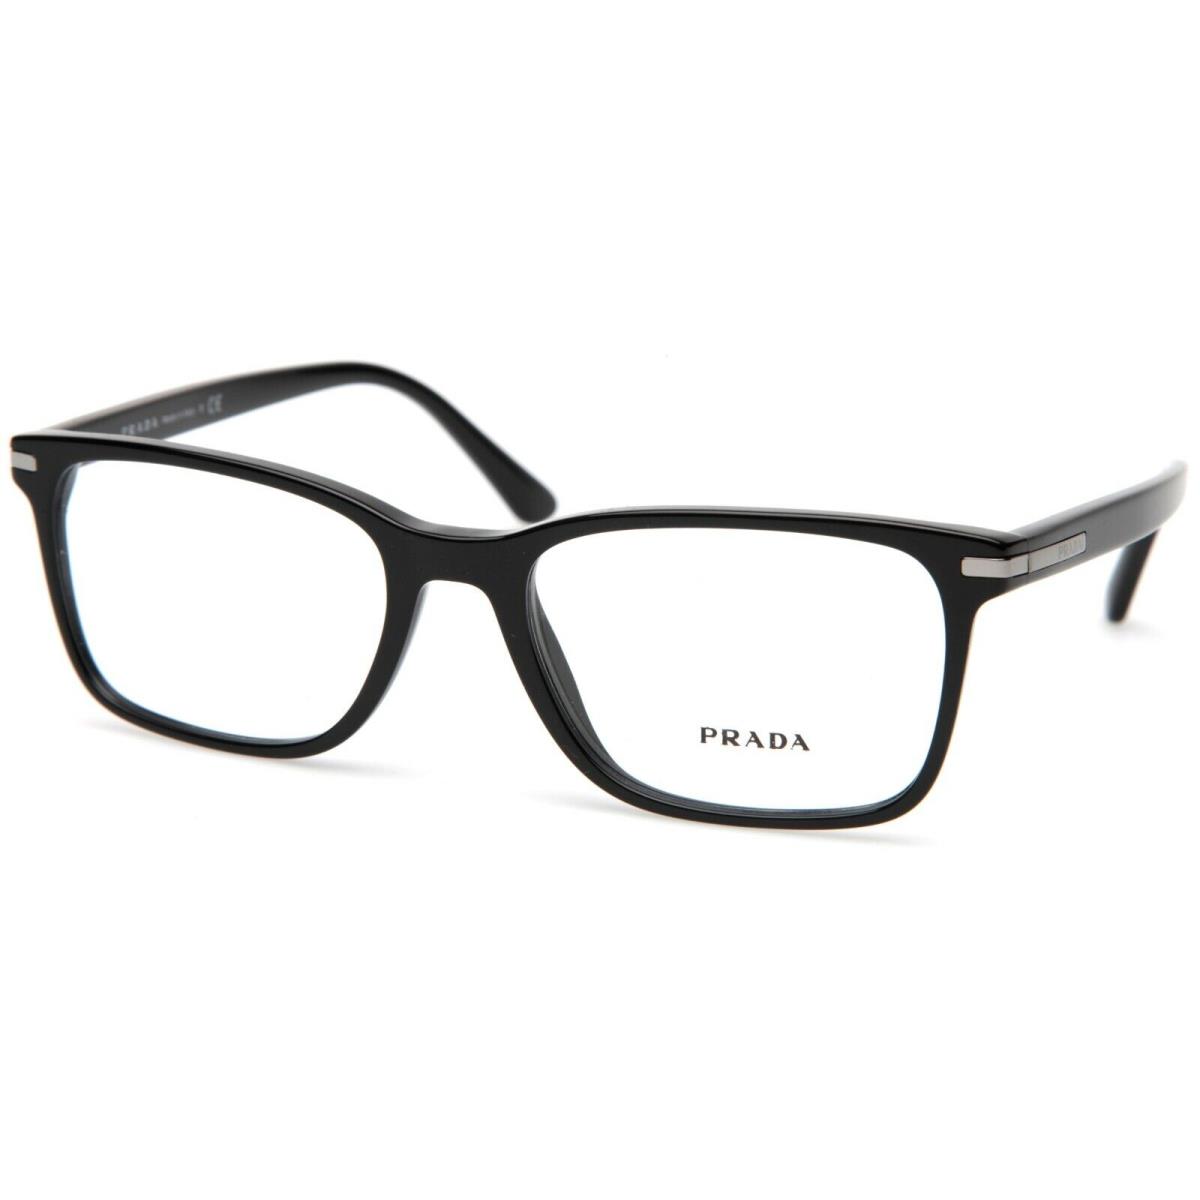 Prada Vpr 14w 1ab 1o1 Black Eyeglasses 54 18 145 B38mm Italy 606113116029 Prada Eyeglasses